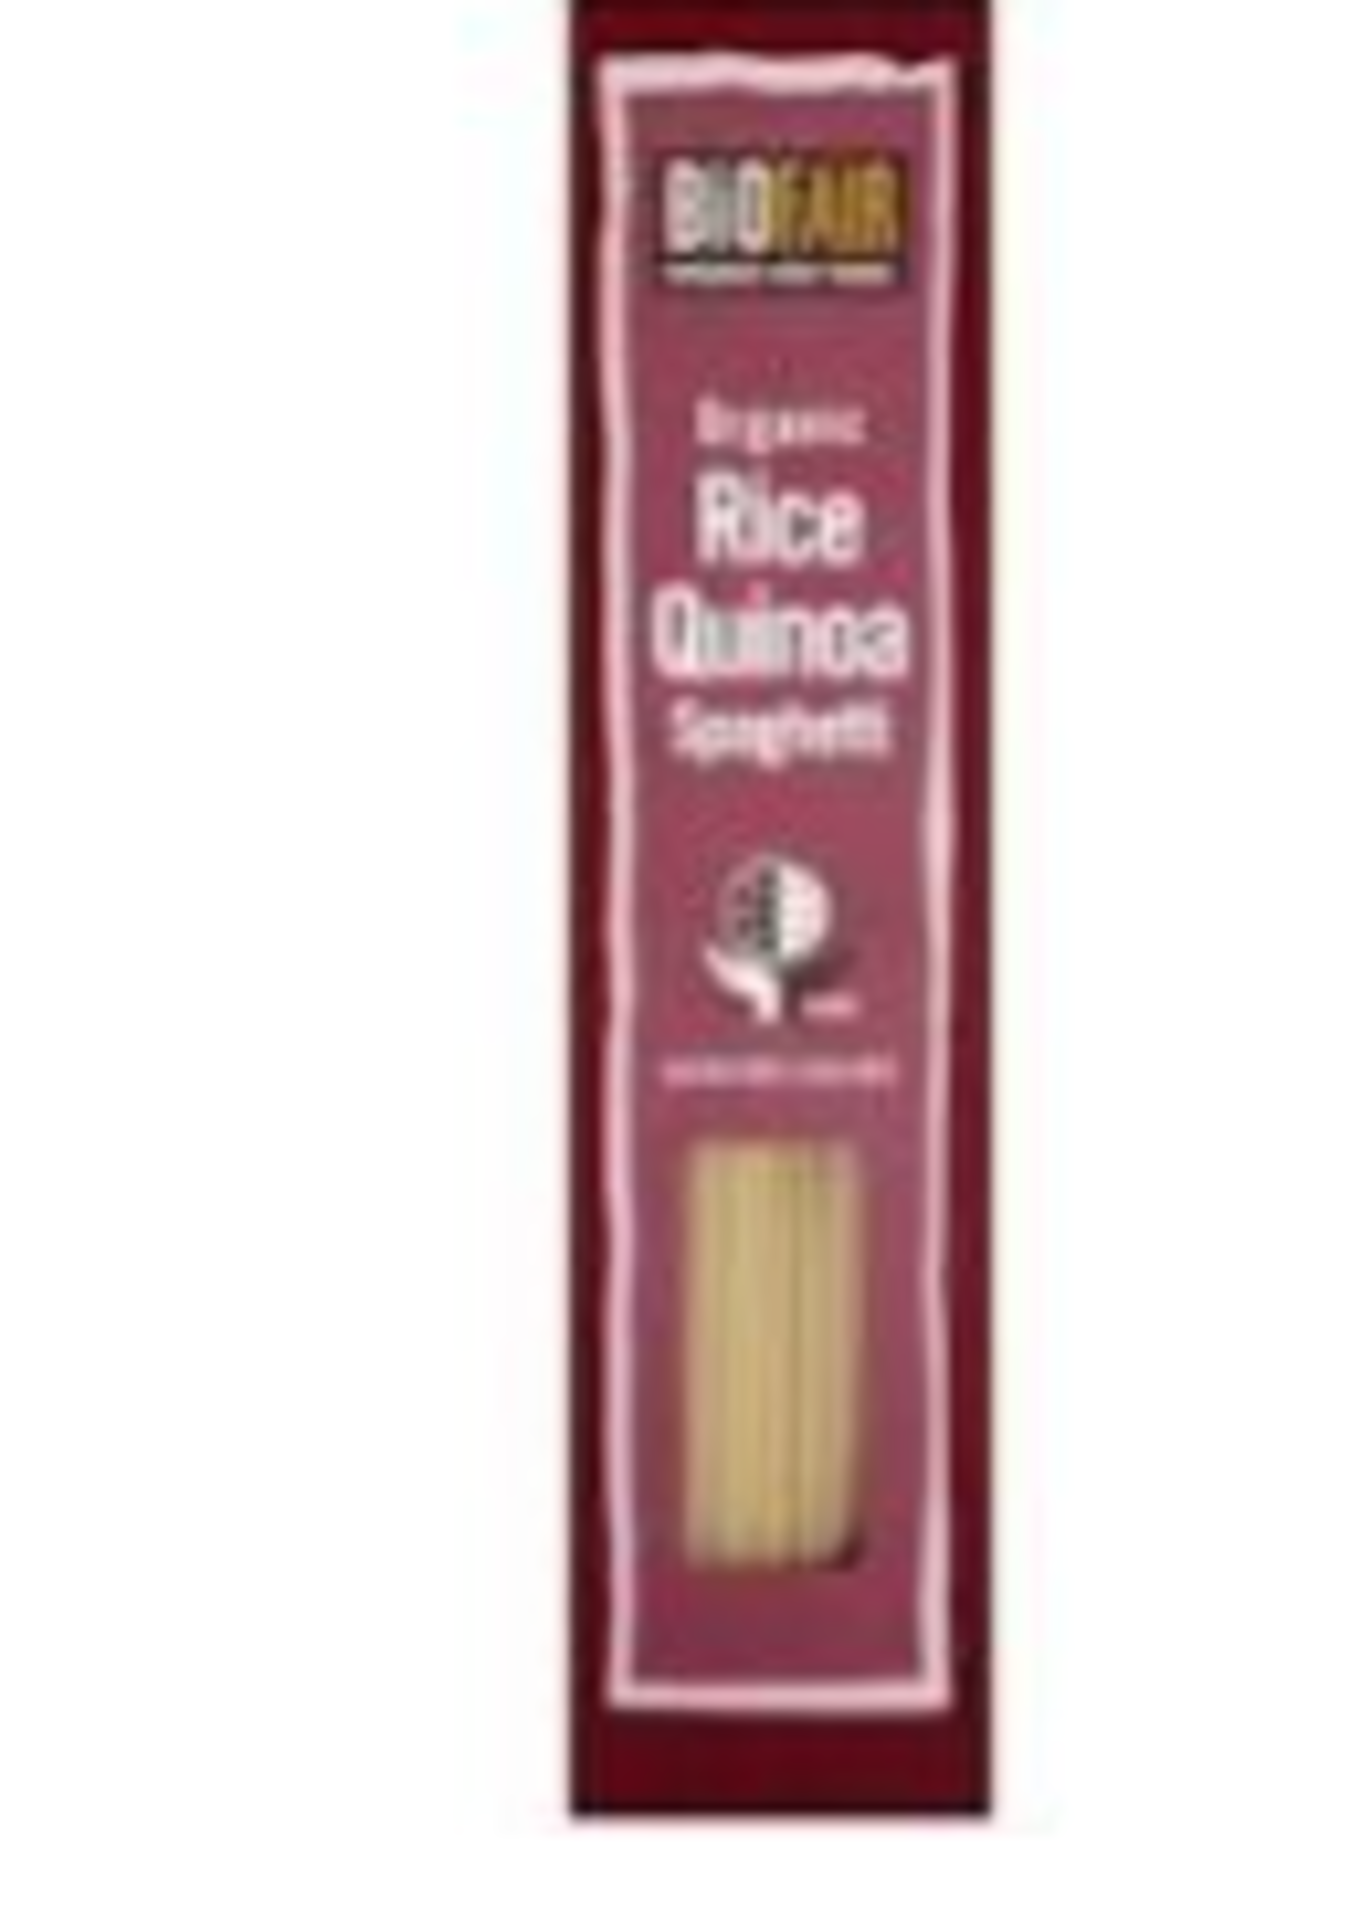 RRP £2000 Lot To Contain Biofair Organic Rice Quinoa Spaghetti 250G Ferrero Raffaello Coconut Almon - Image 2 of 2